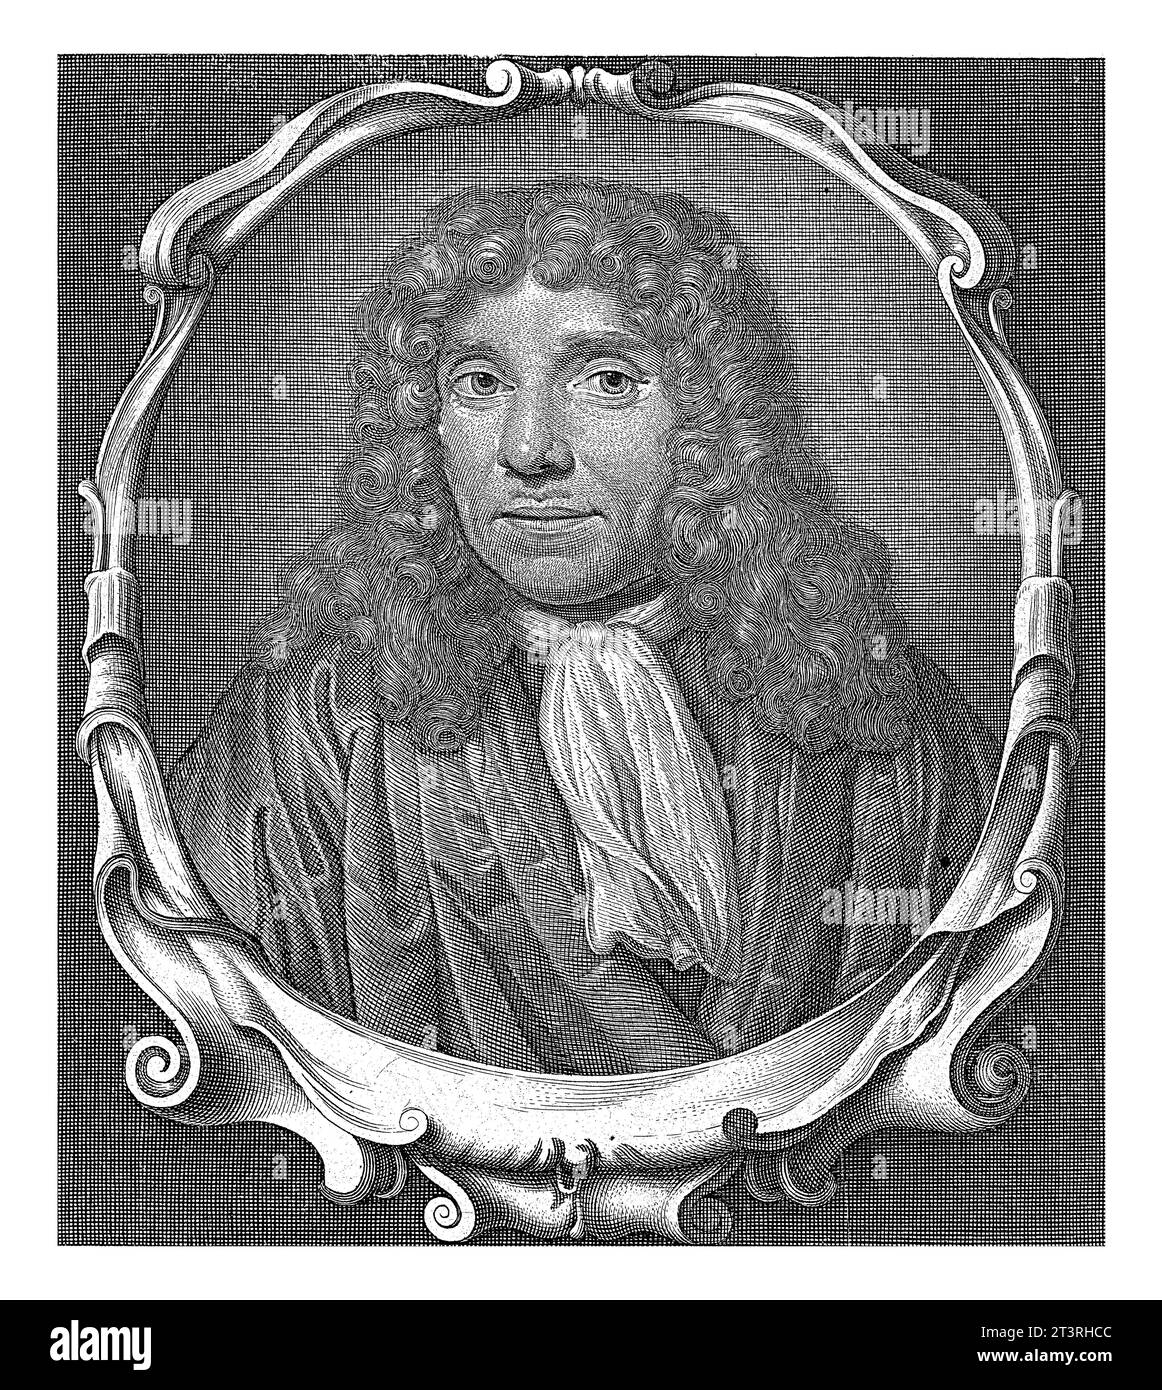 Portrait of Antonie van Leeuwenhoek, Abraham de Blois, after Jan Verkolje, 1679 - 1717 Portrait of Antonie van Leeuwenhoek, bust in oval frame with sc Stock Photo